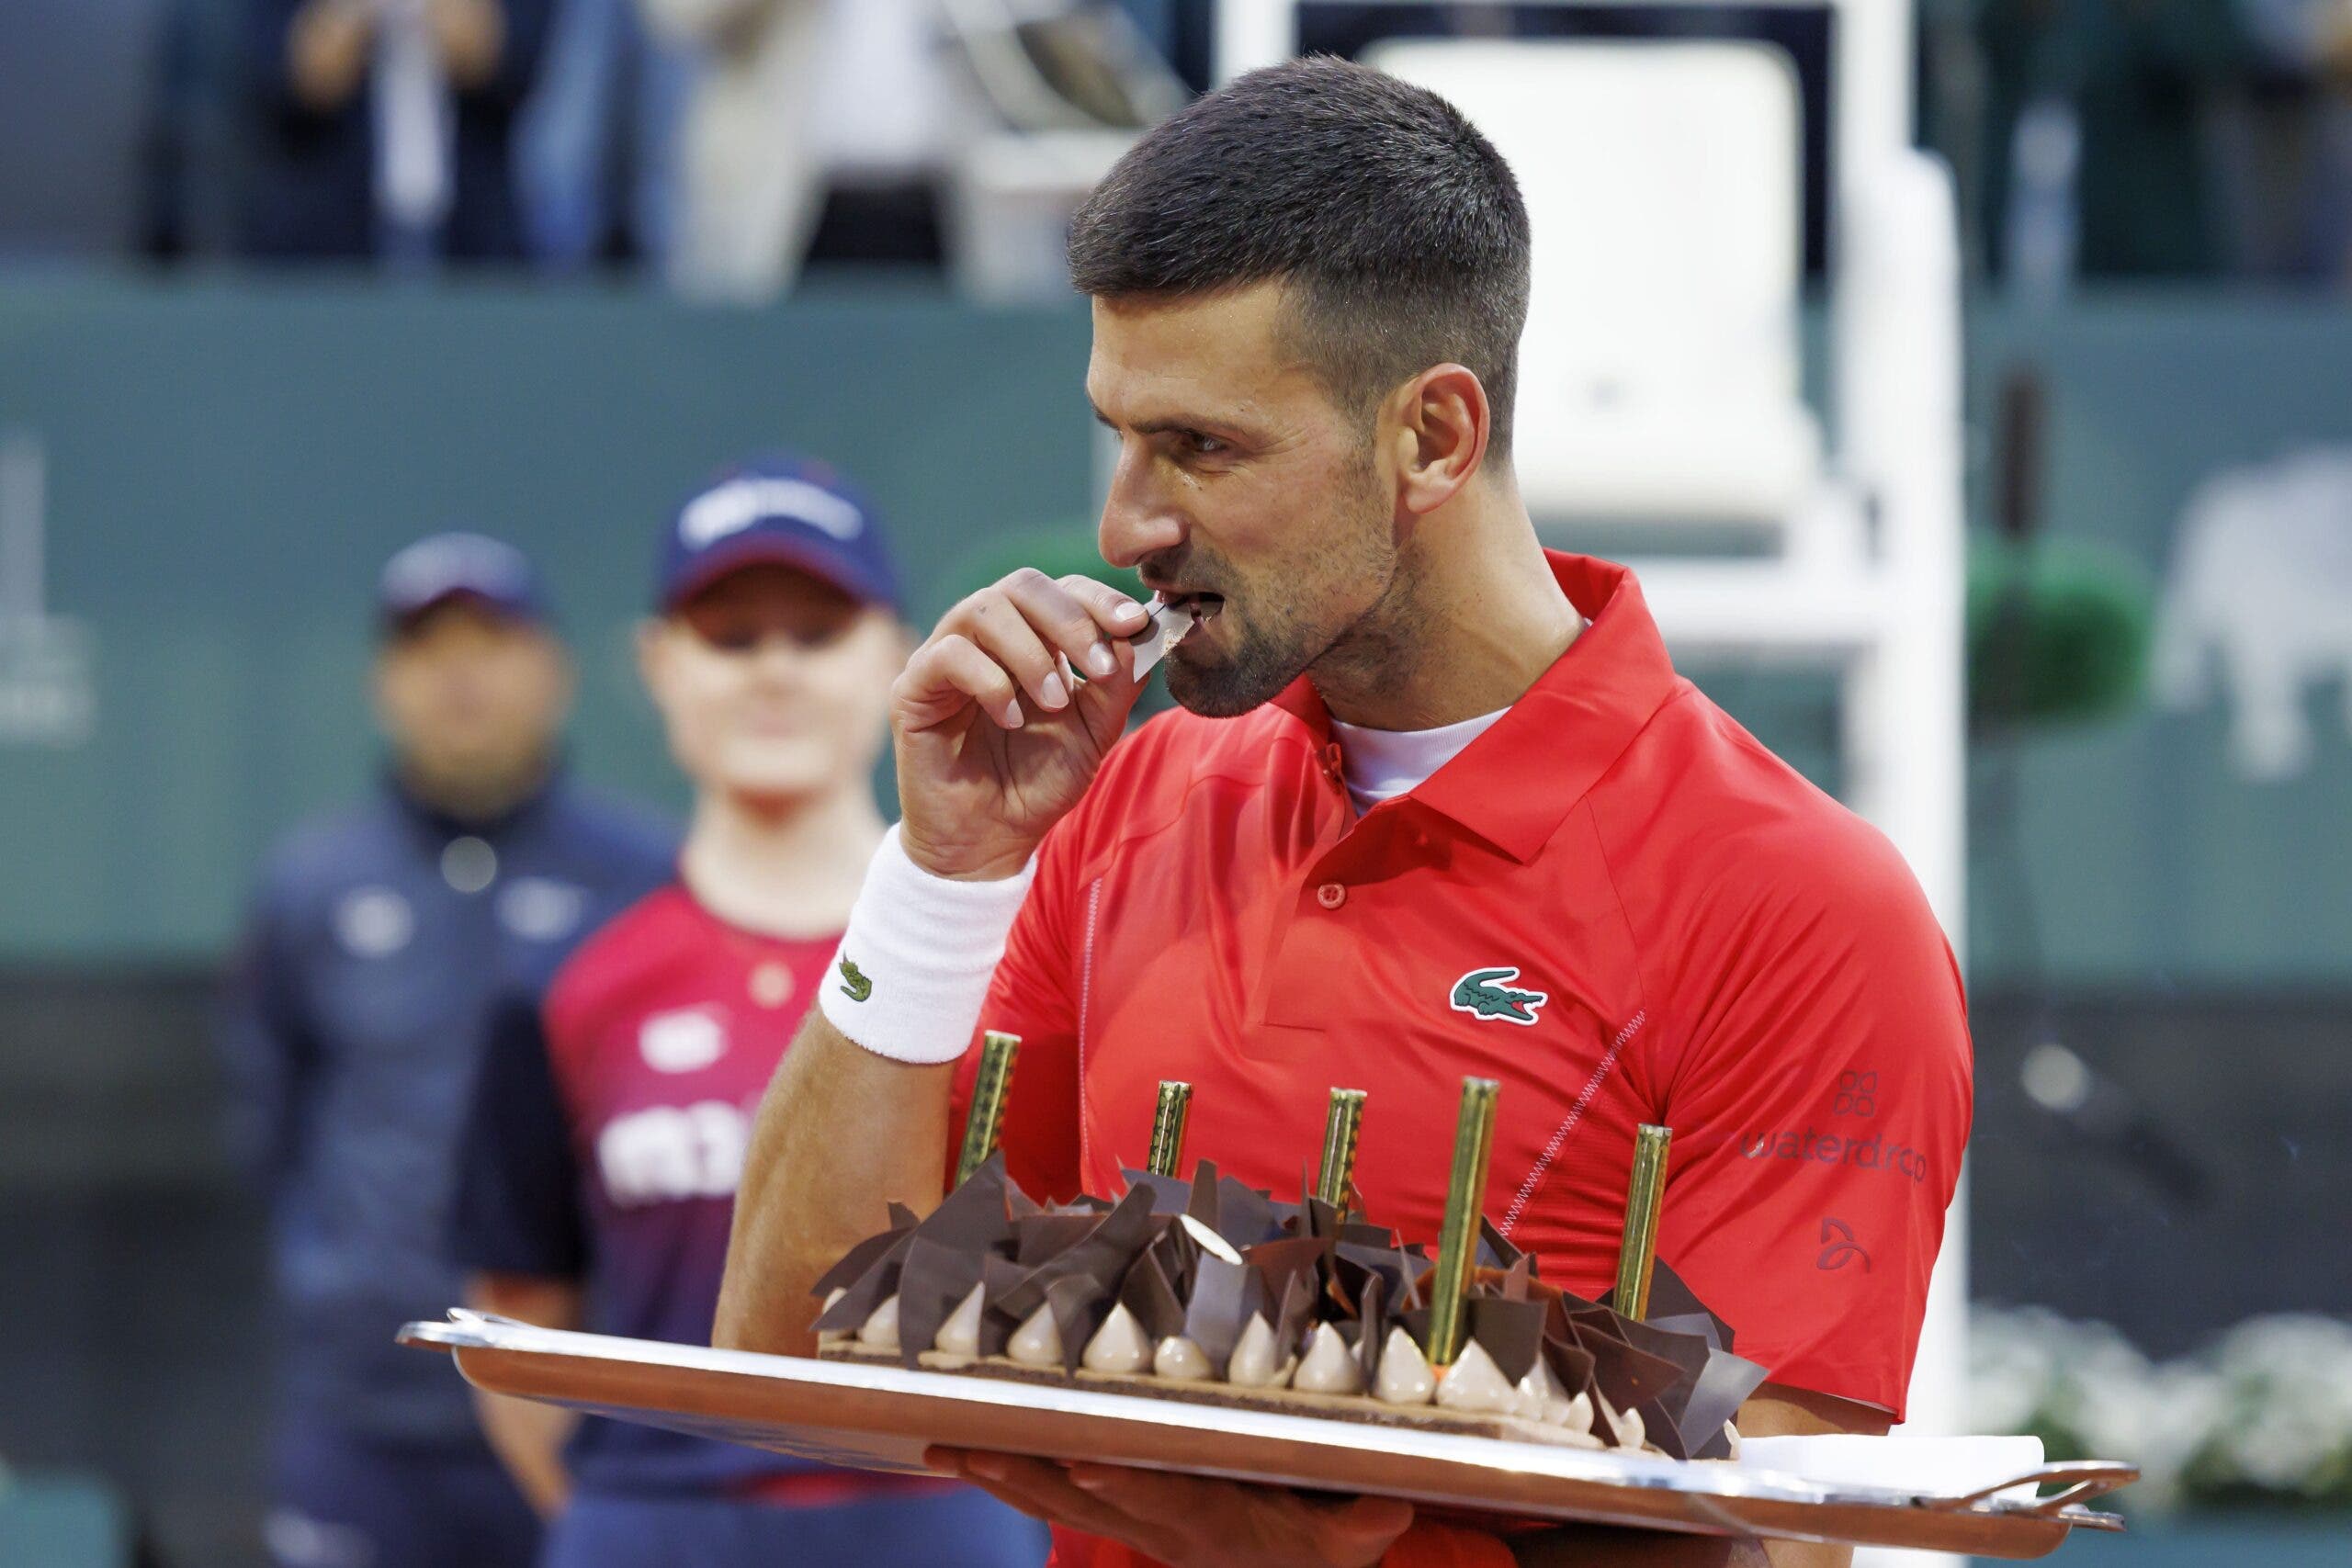 [VÍDEO] Com direito a bolo: Djokovic chamou apanha bolas para celebrar o 37.º aniversário em court